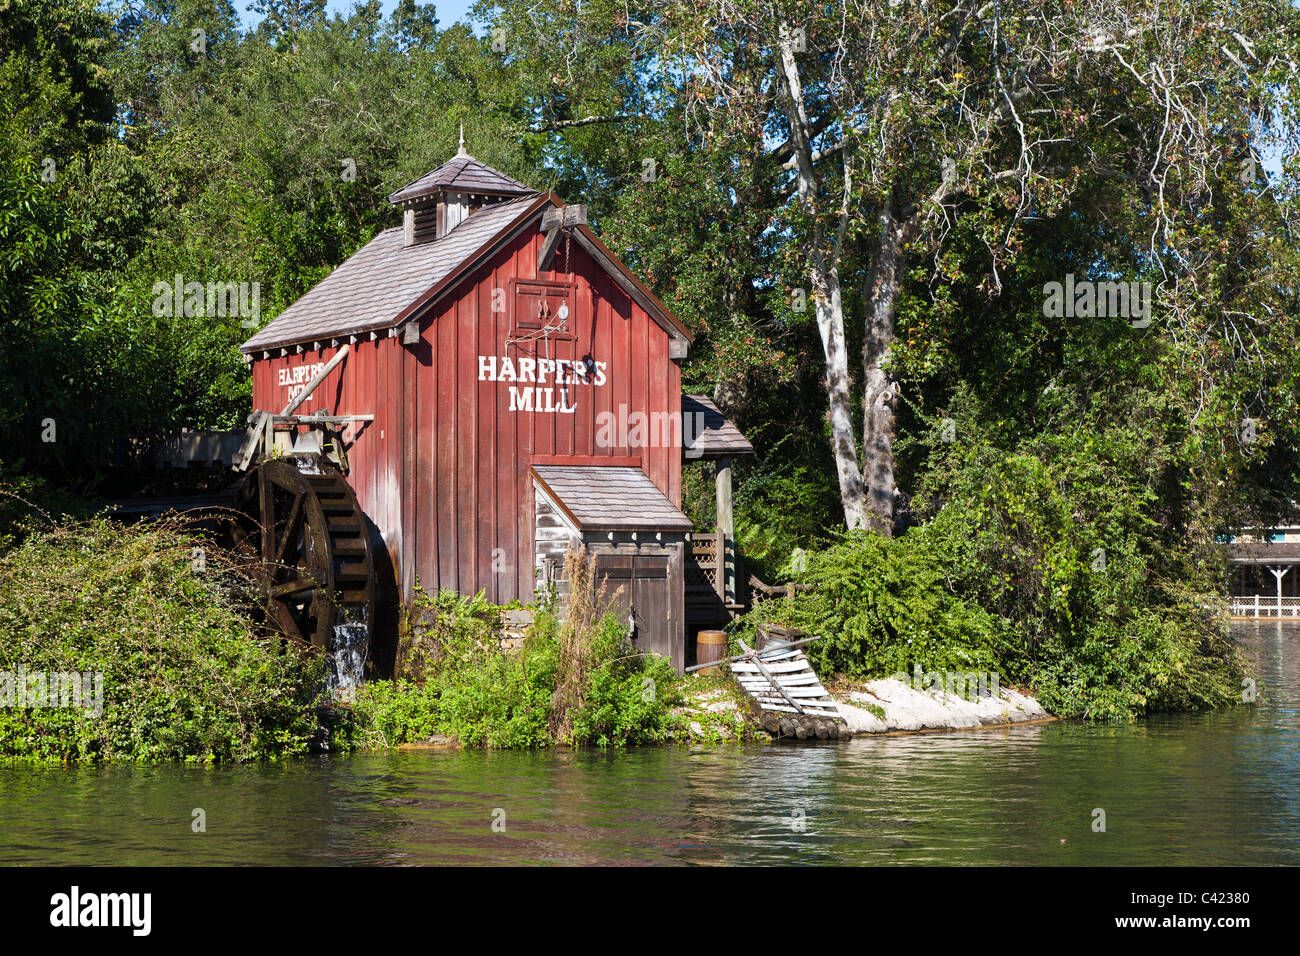 Harper's Mill Grist mill sur Tom Sawyer Island dans le Magic Kingdom de Disney World, à Kissimmee, Floride Banque D'Images